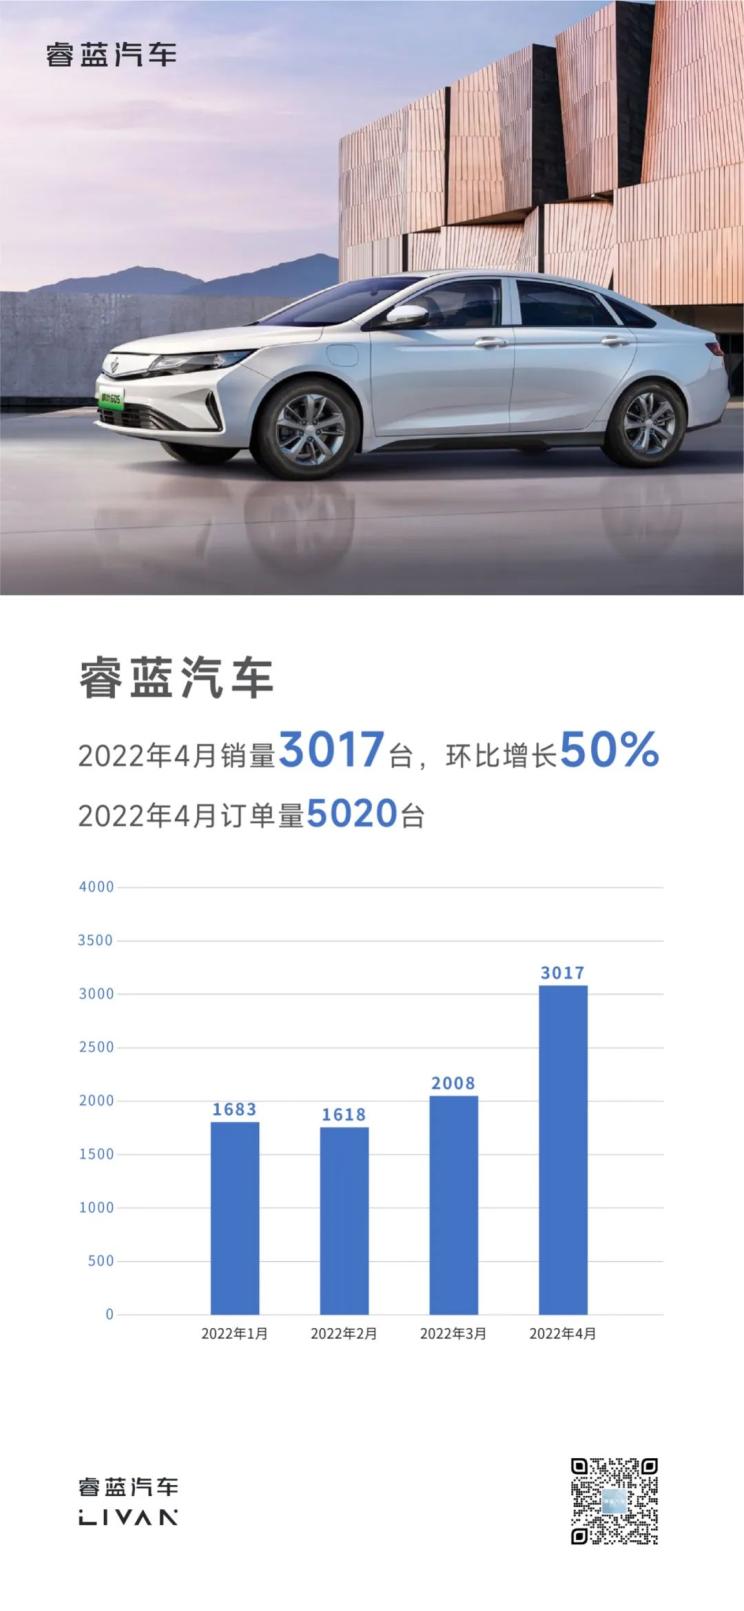 环比增长50% 睿蓝汽车公布4月销量数据